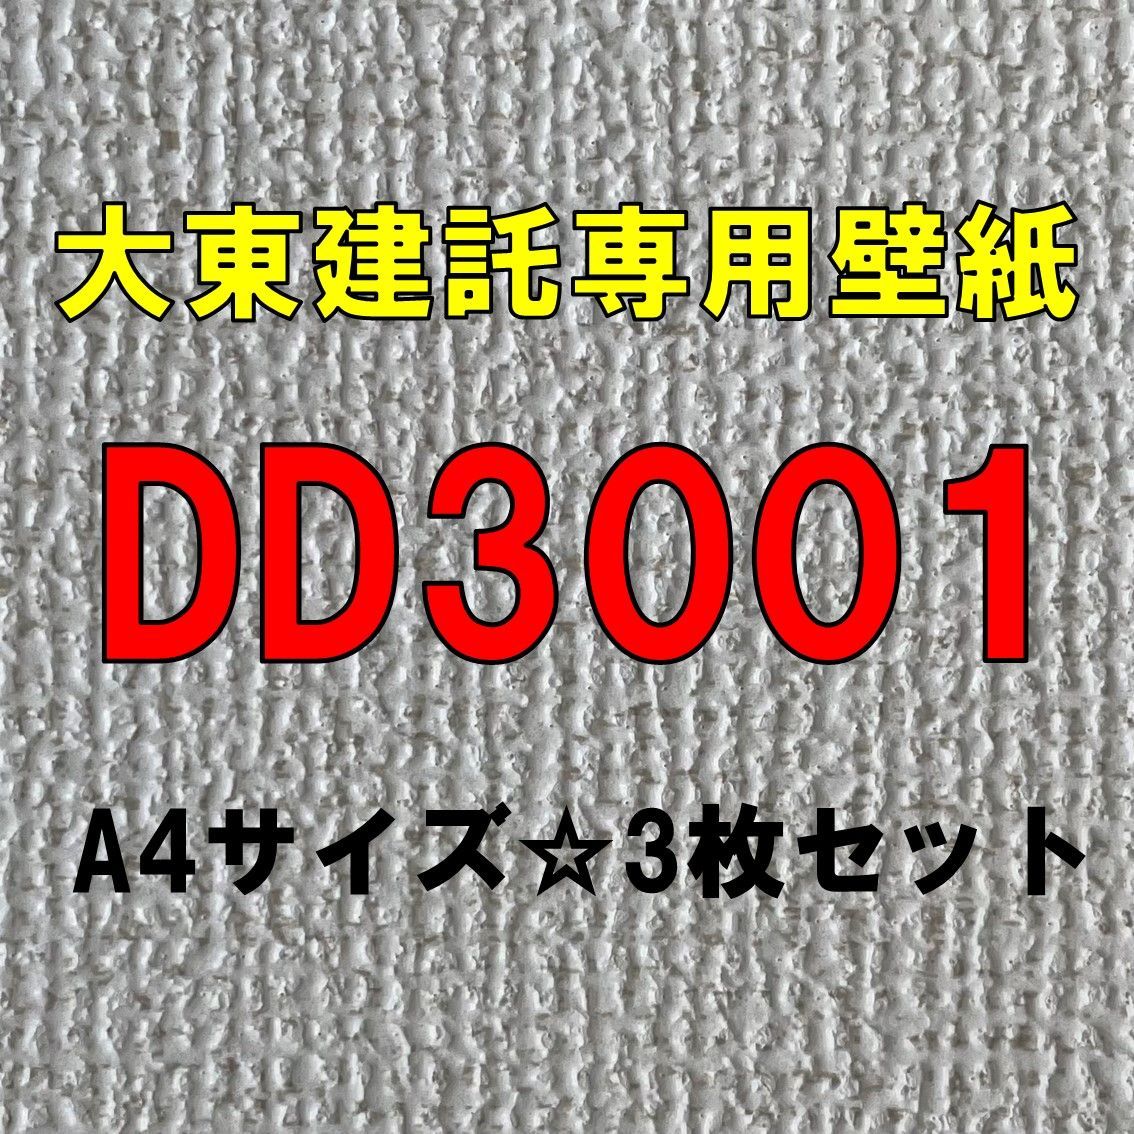 大東建託専用サンゲツ壁紙 DD3001 巾90cm×長さ10m-